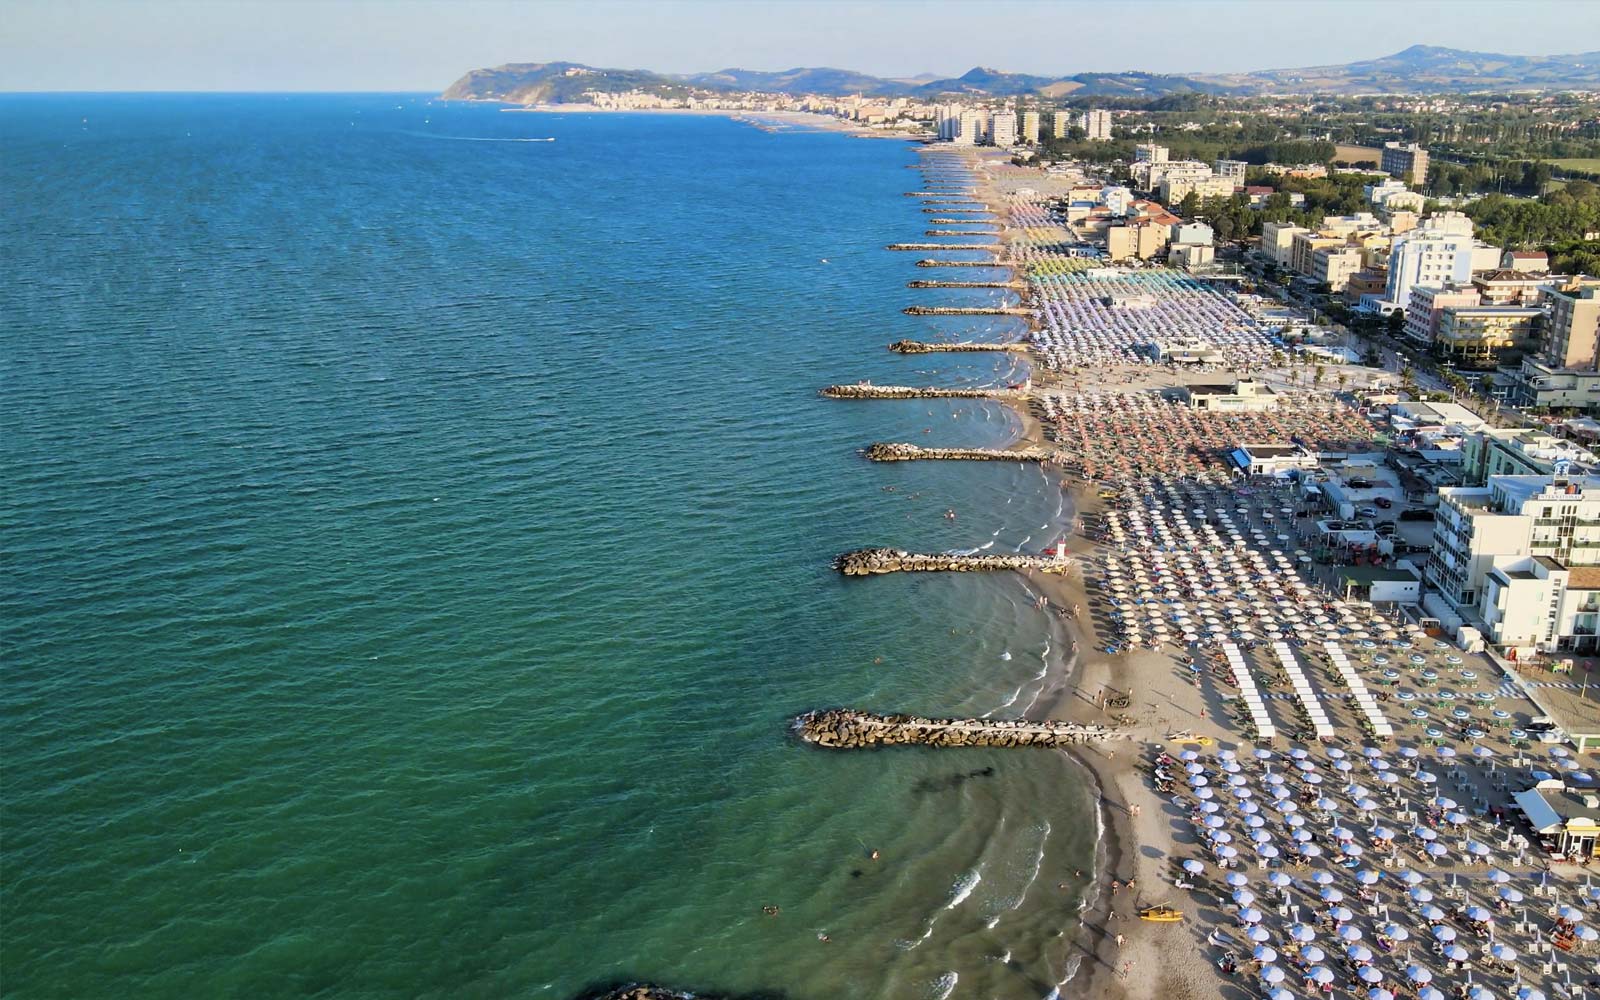 Vista aerea di Misano Adriatico